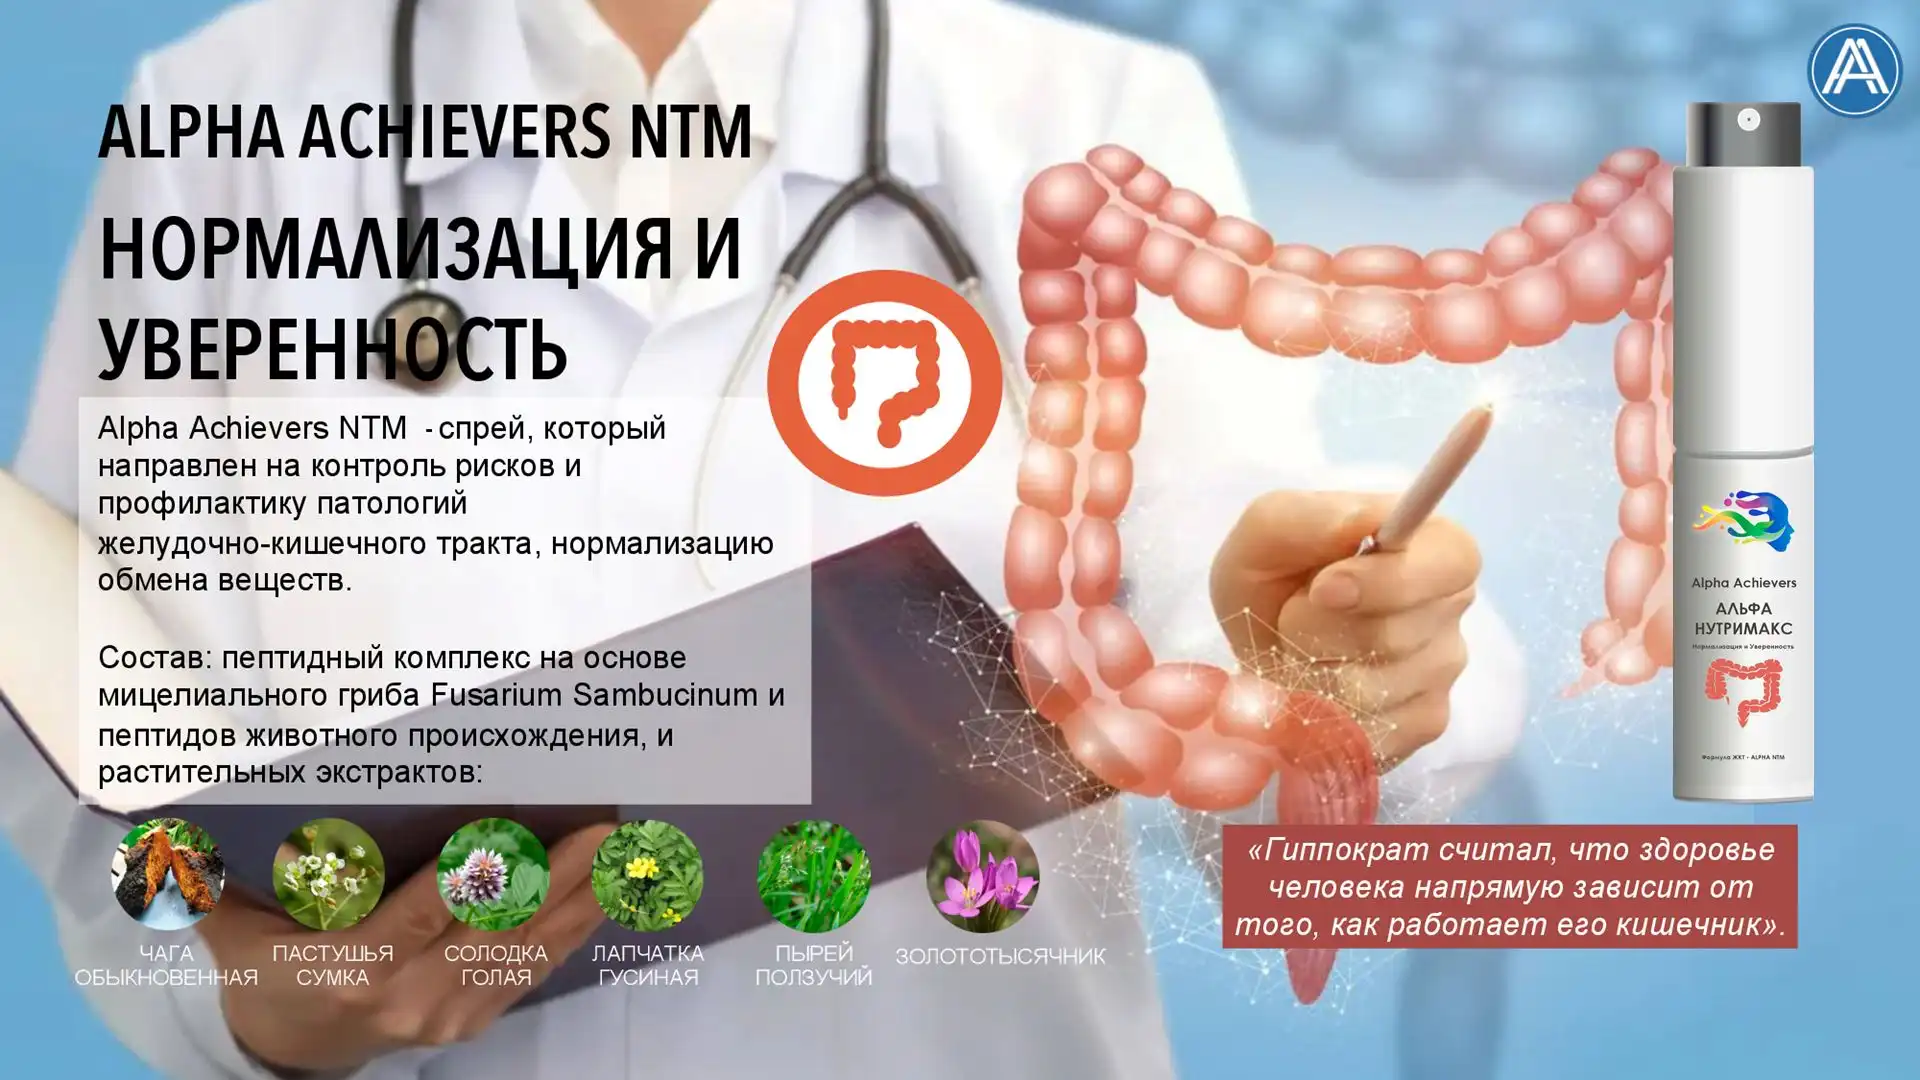 Alpha Achievers NTM- профилактика патологий Желудочно-кишечного тракта